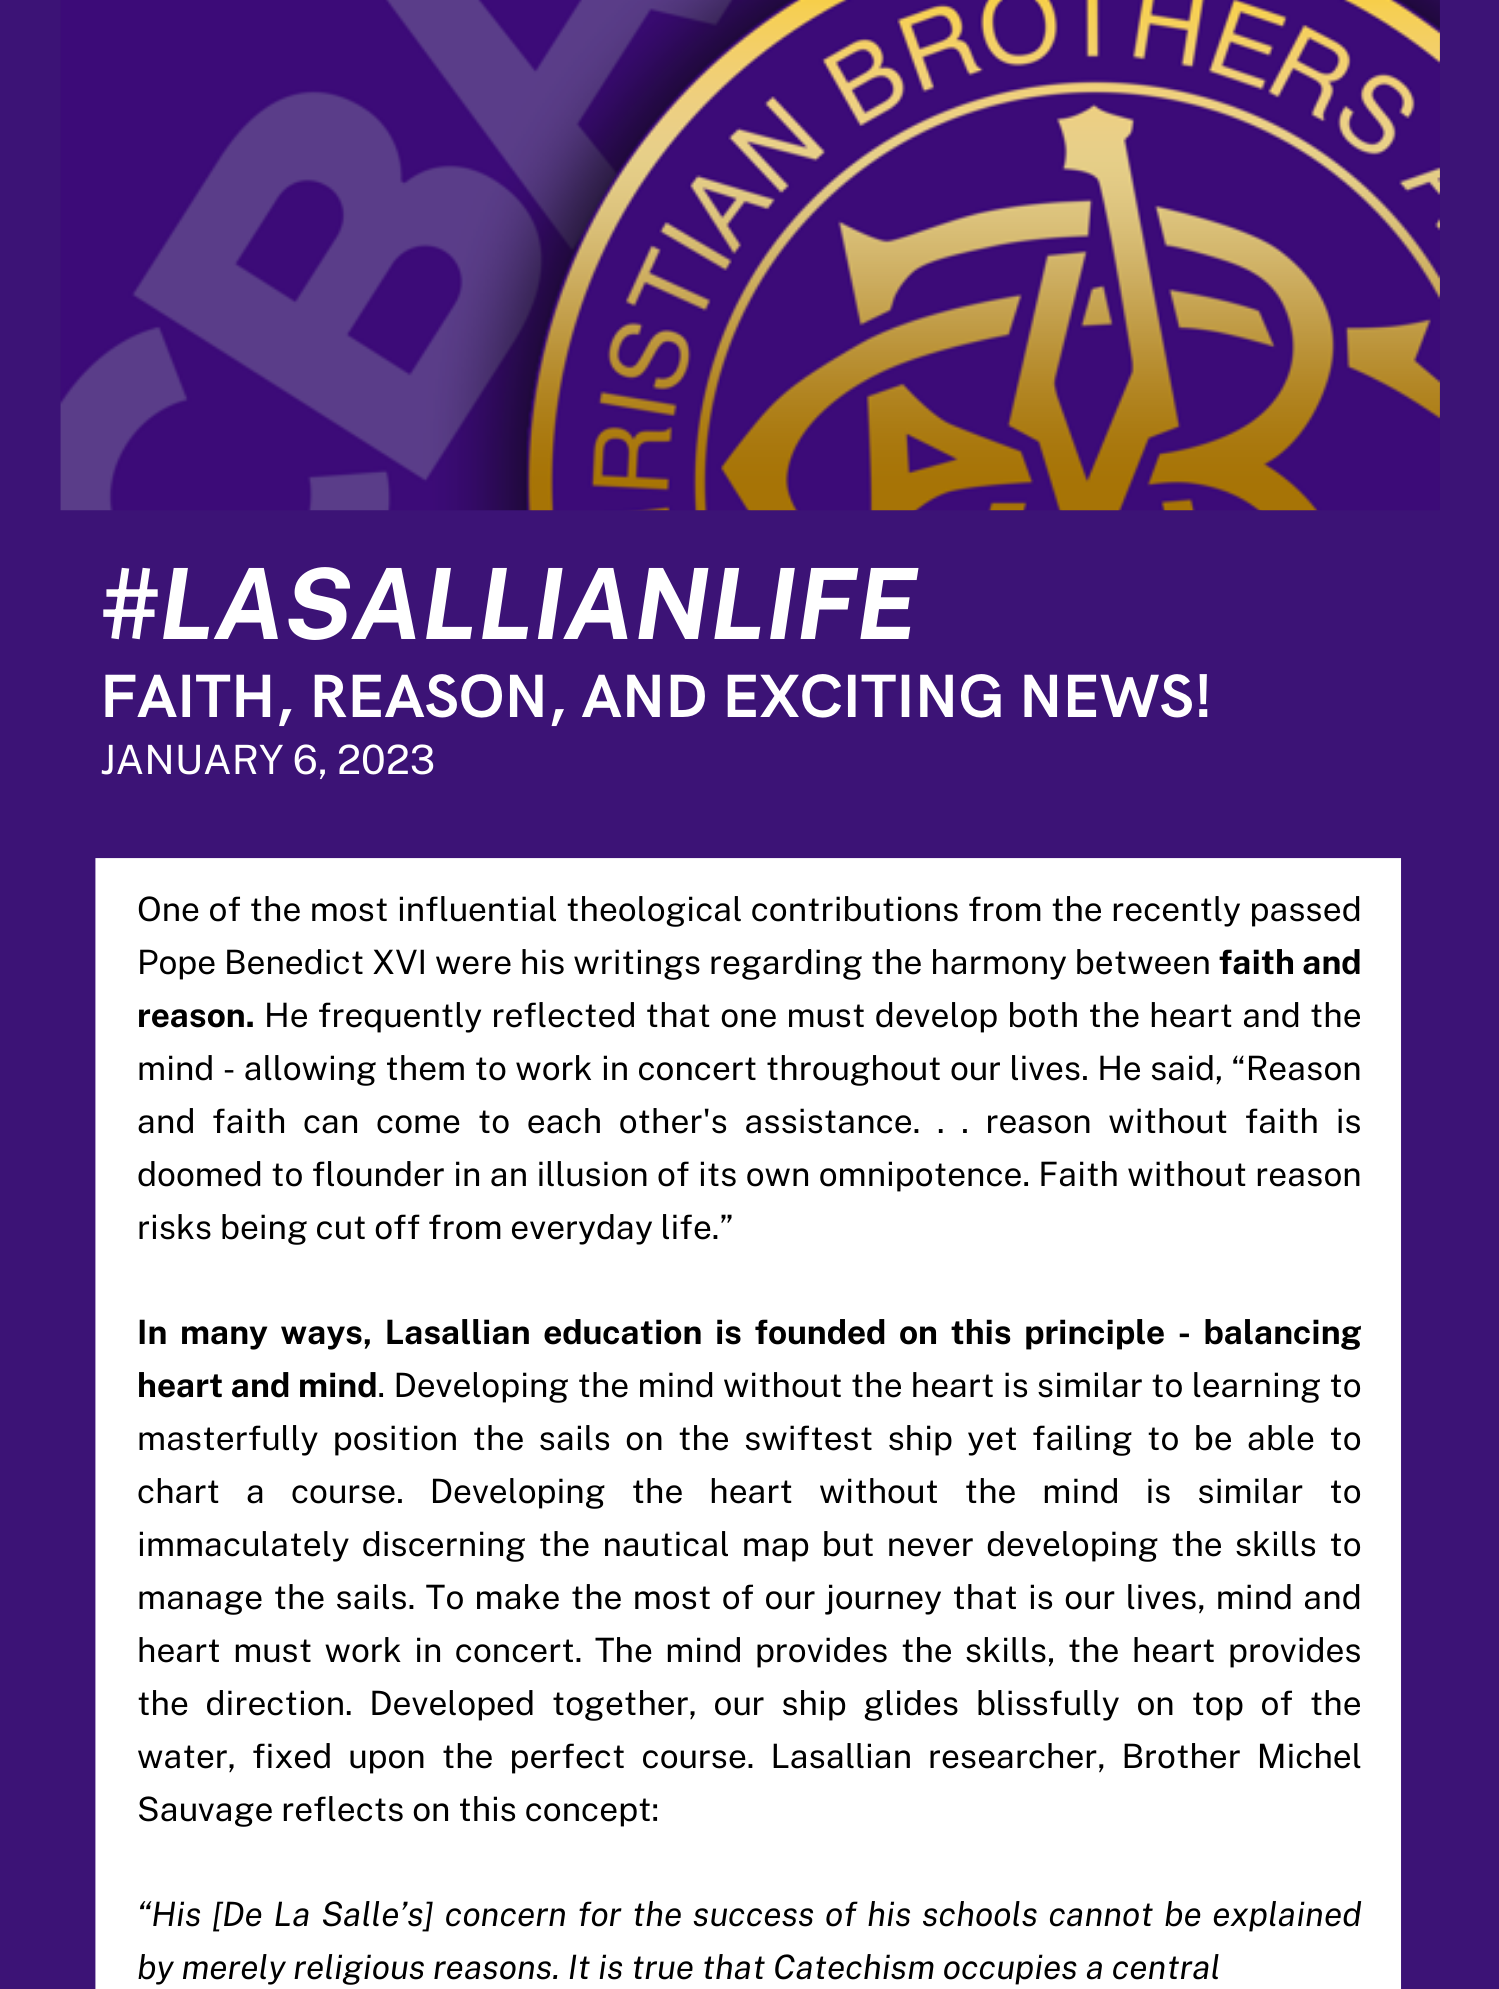 faith reason and exciting news near syracuse ny image of cba lasallian life poster